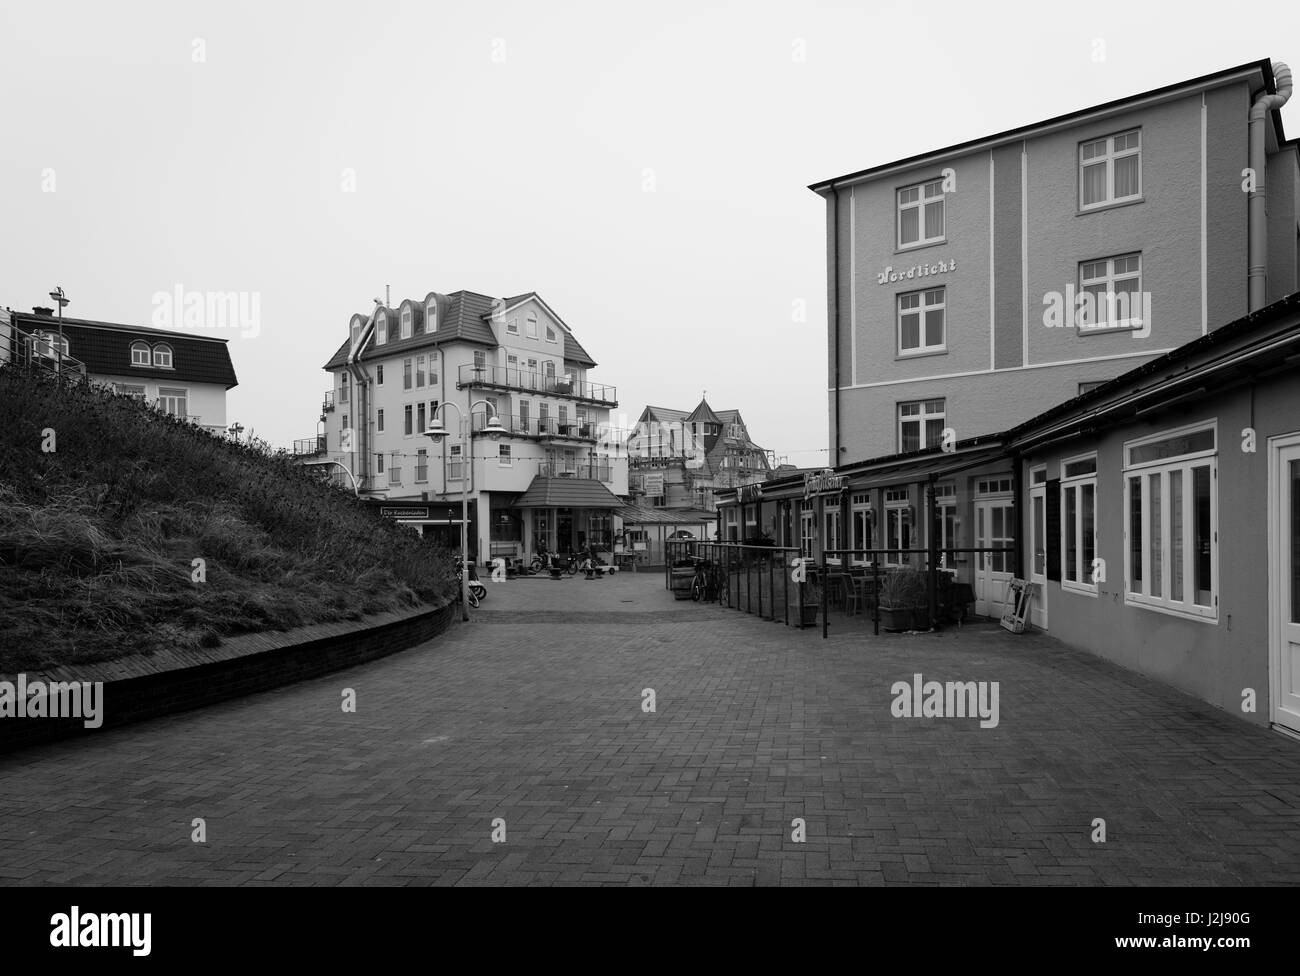 Il centro del villaggio, a Wangerooge presso il Cafe Pudding in inverno, Wangerooge, Germania, Bassa Sassonia, isola, isola del Mare del Nord, inverno Foto Stock